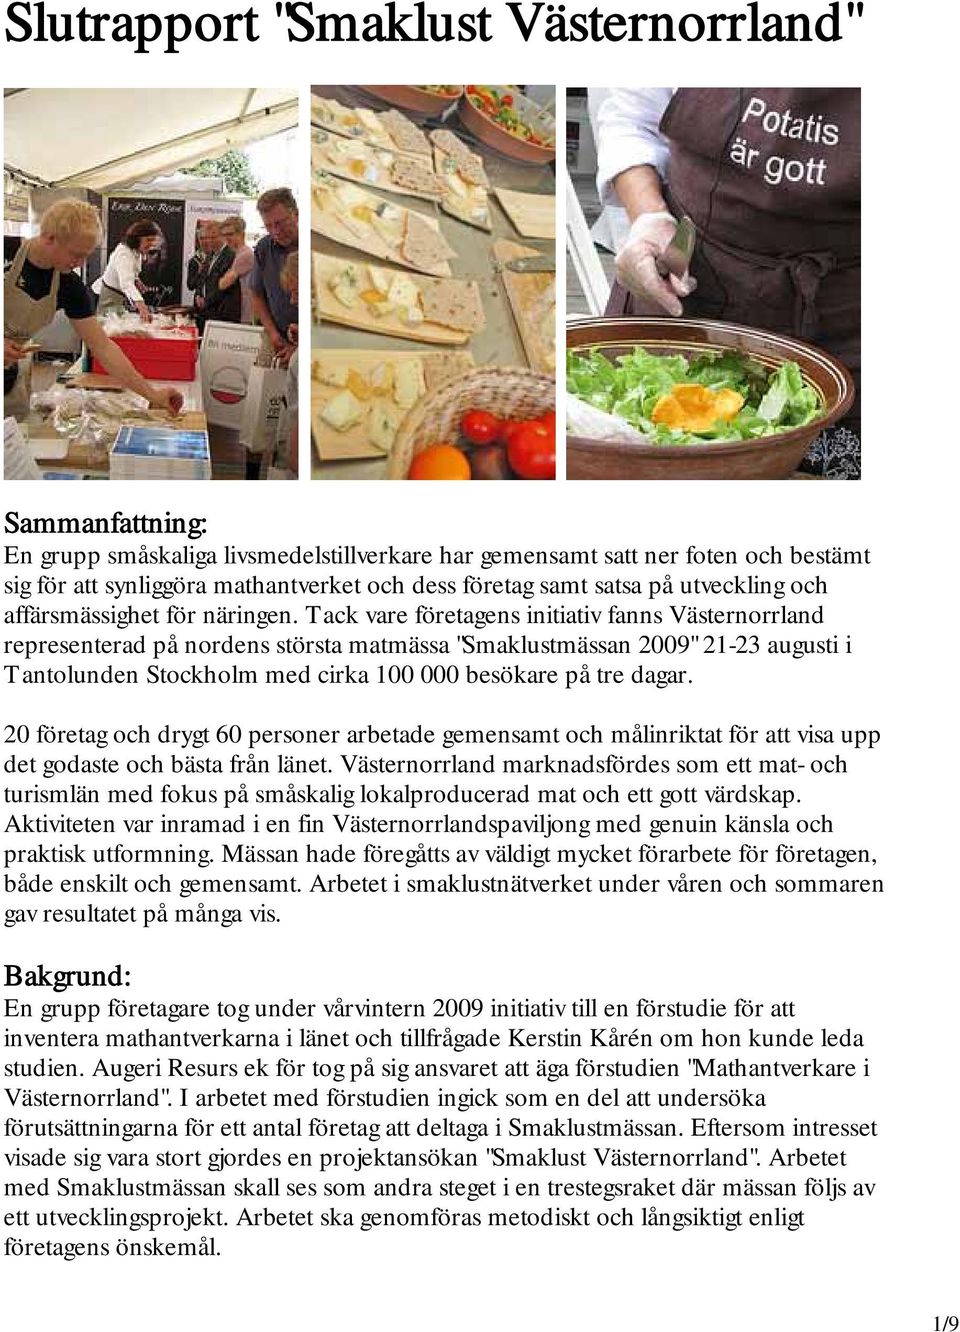 Tack vare företagens initiativ fanns Västernorrland representerad på nordens största matmässa "Smaklustmässan 2009" 21-23 augusti i Tantolunden Stockholm med cirka 100 000 besökare på tre dagar.